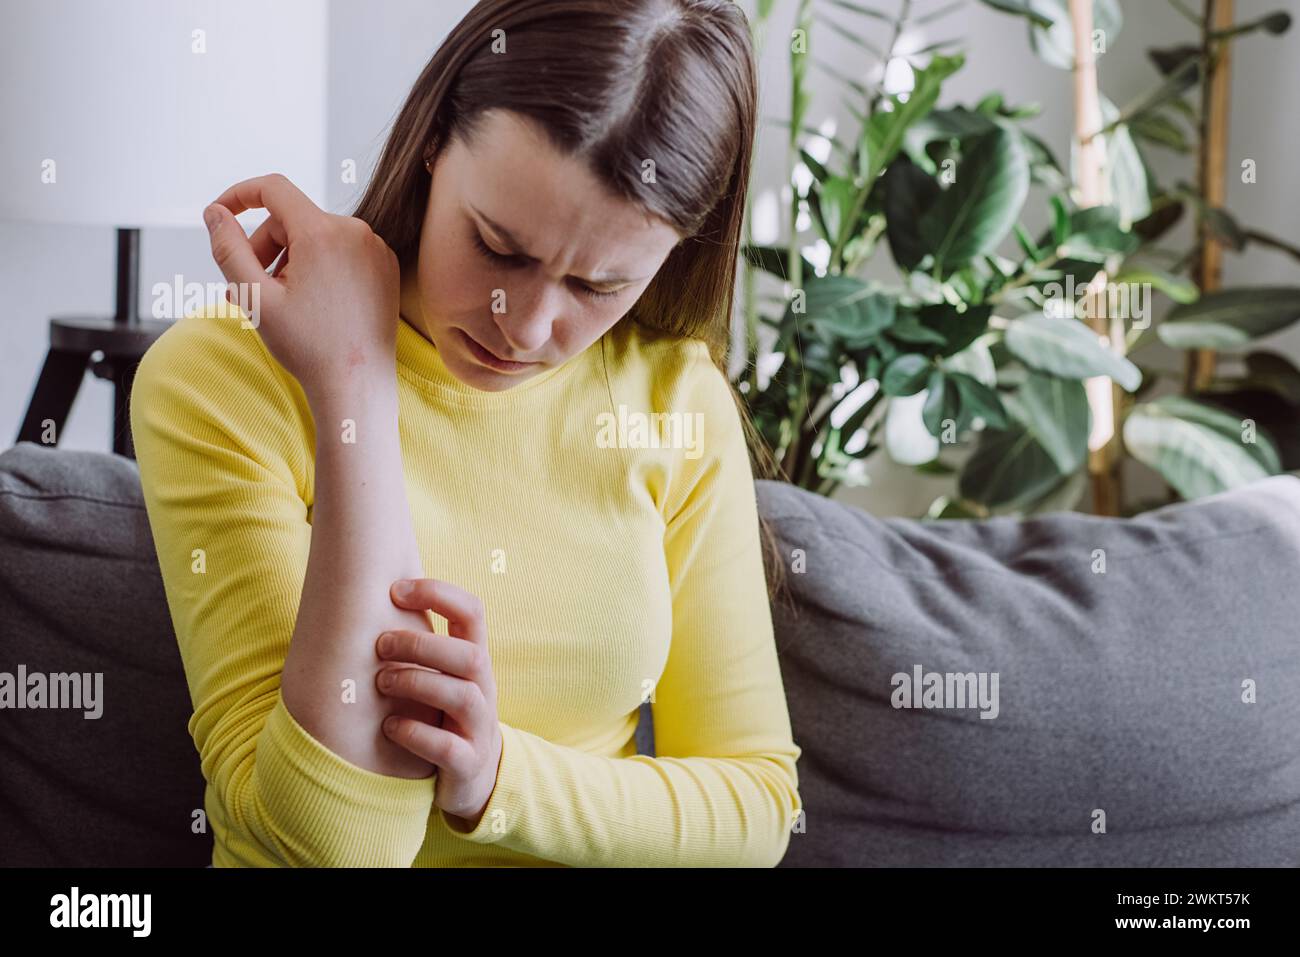 Triste jeune femme caucasienne avec une réaction allergique atopique, piqûres d'insectes sur son bras, main en grattant des démangeaisons, une tache rouge démangeaison ou une éruption cutanée. La santé Banque D'Images